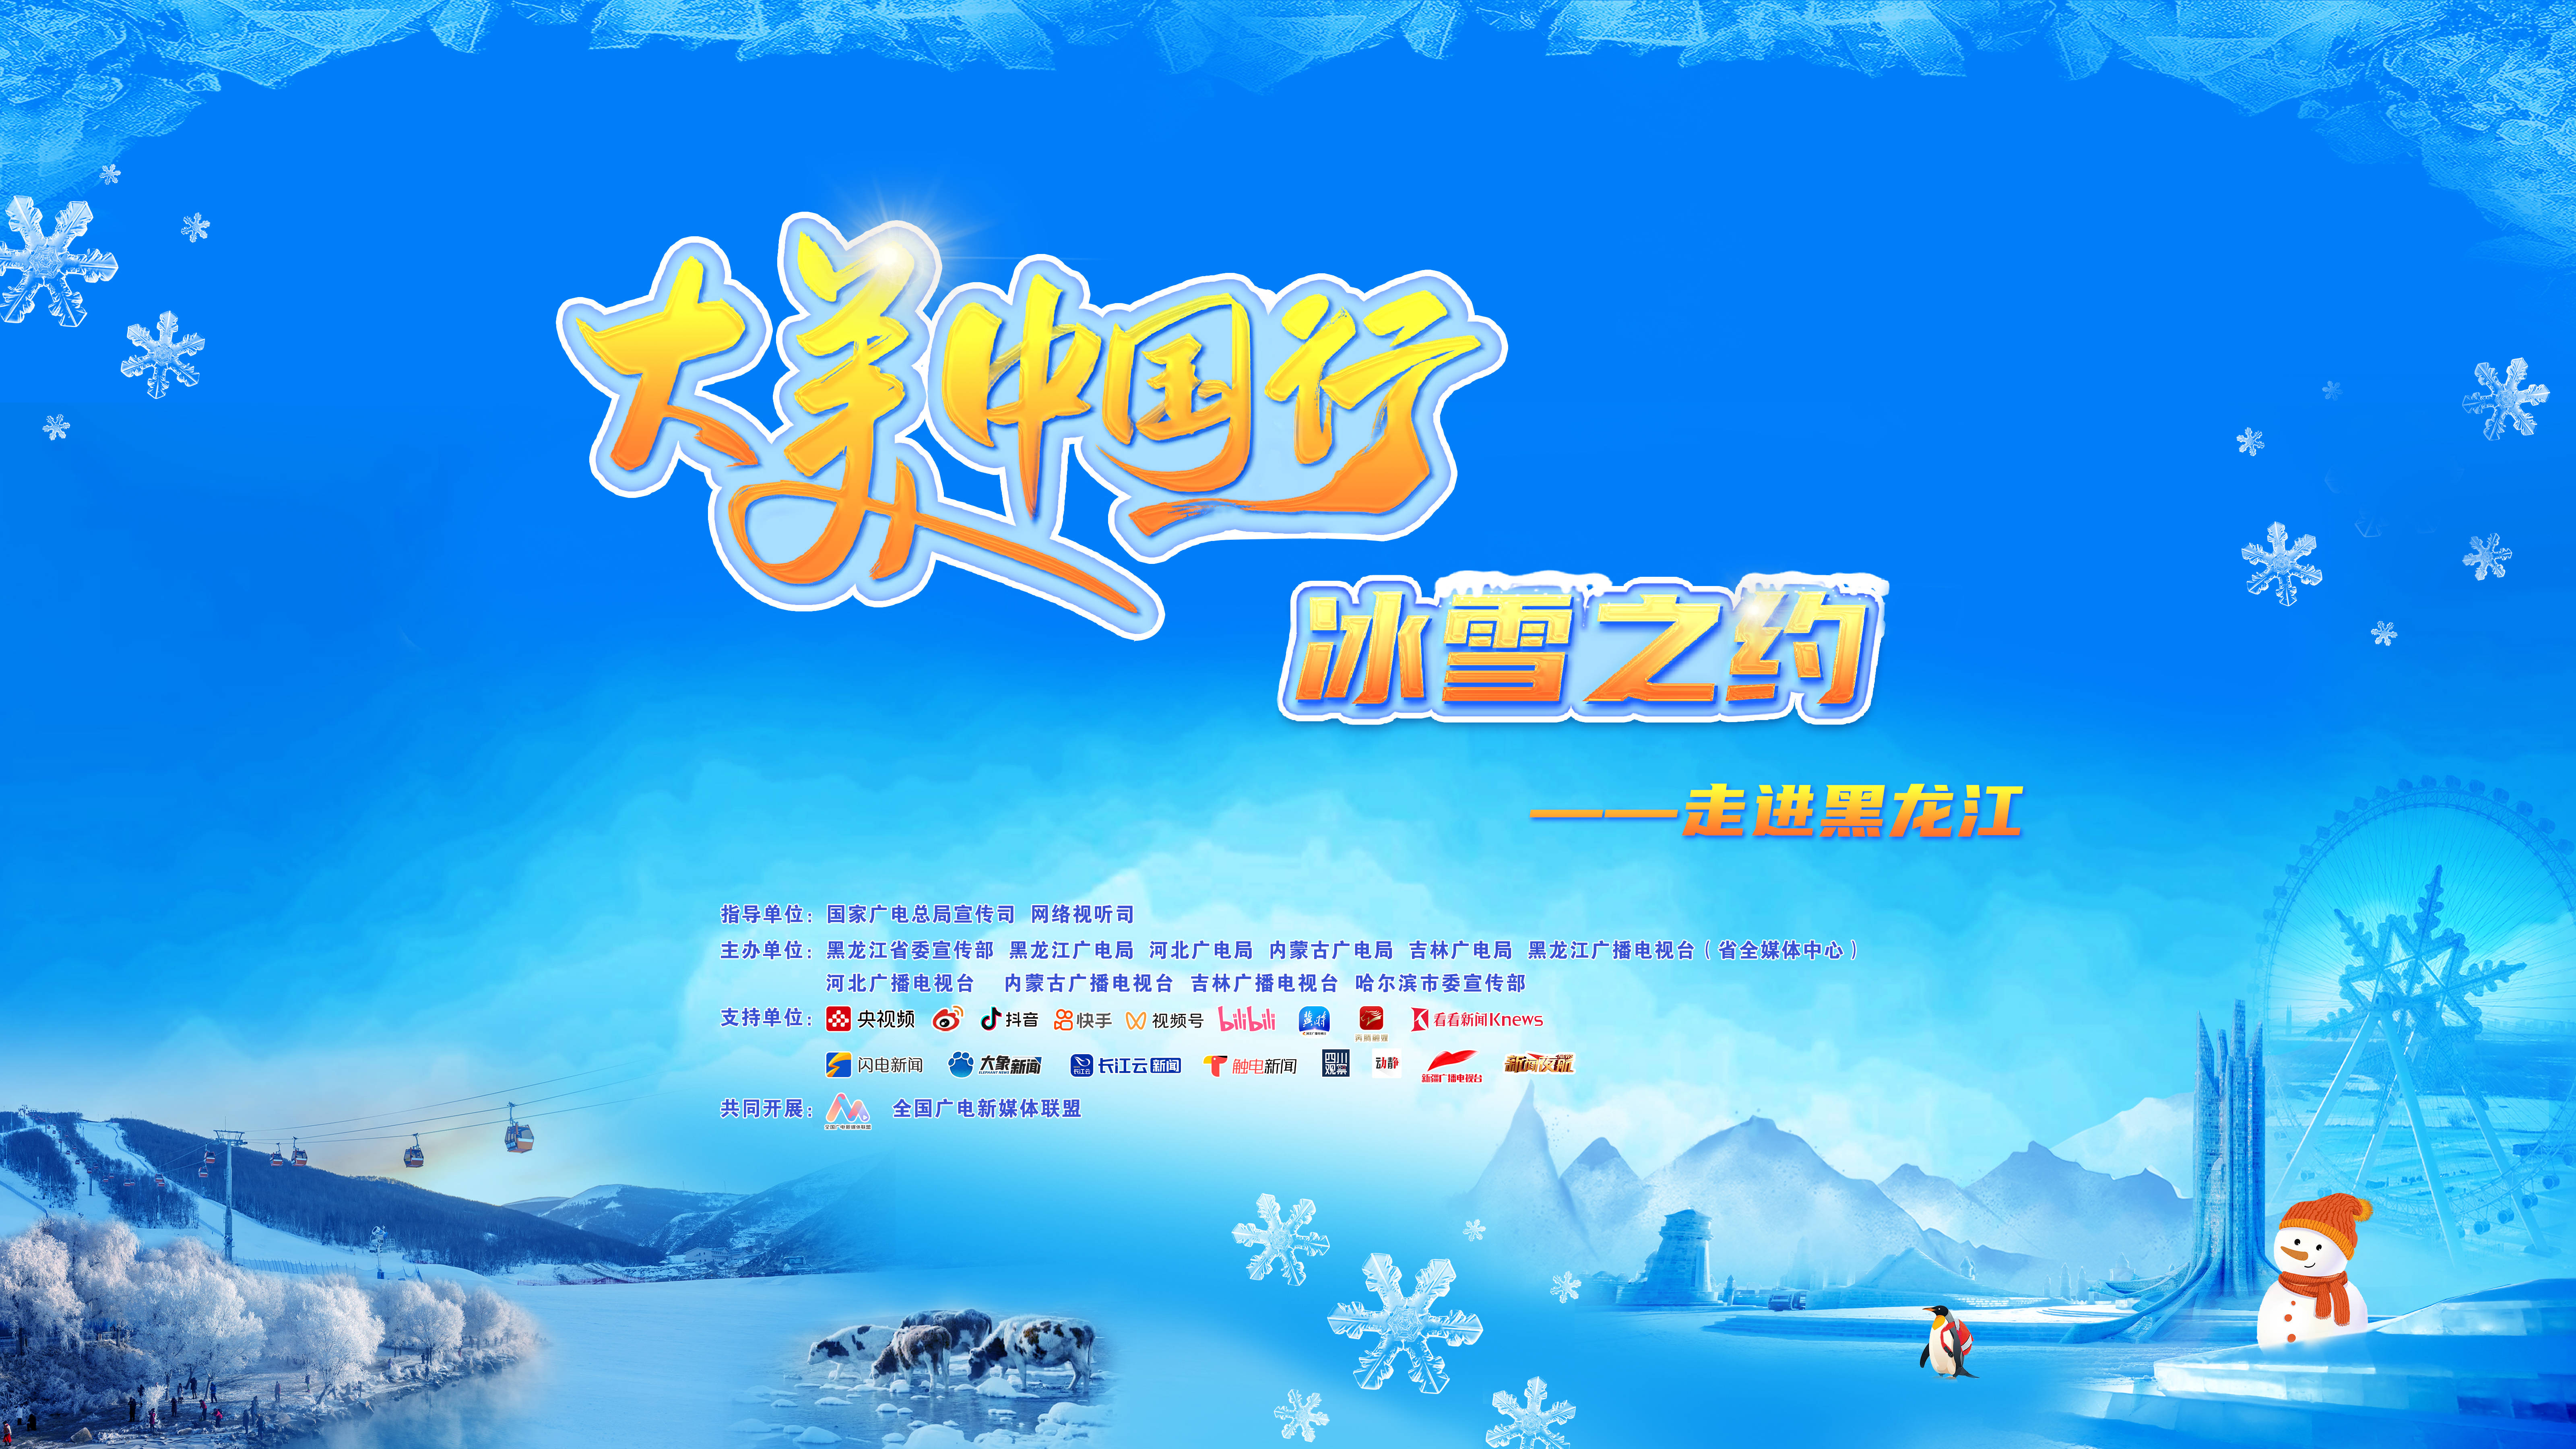 大美中国行 冰雪之约——走进黑龙江